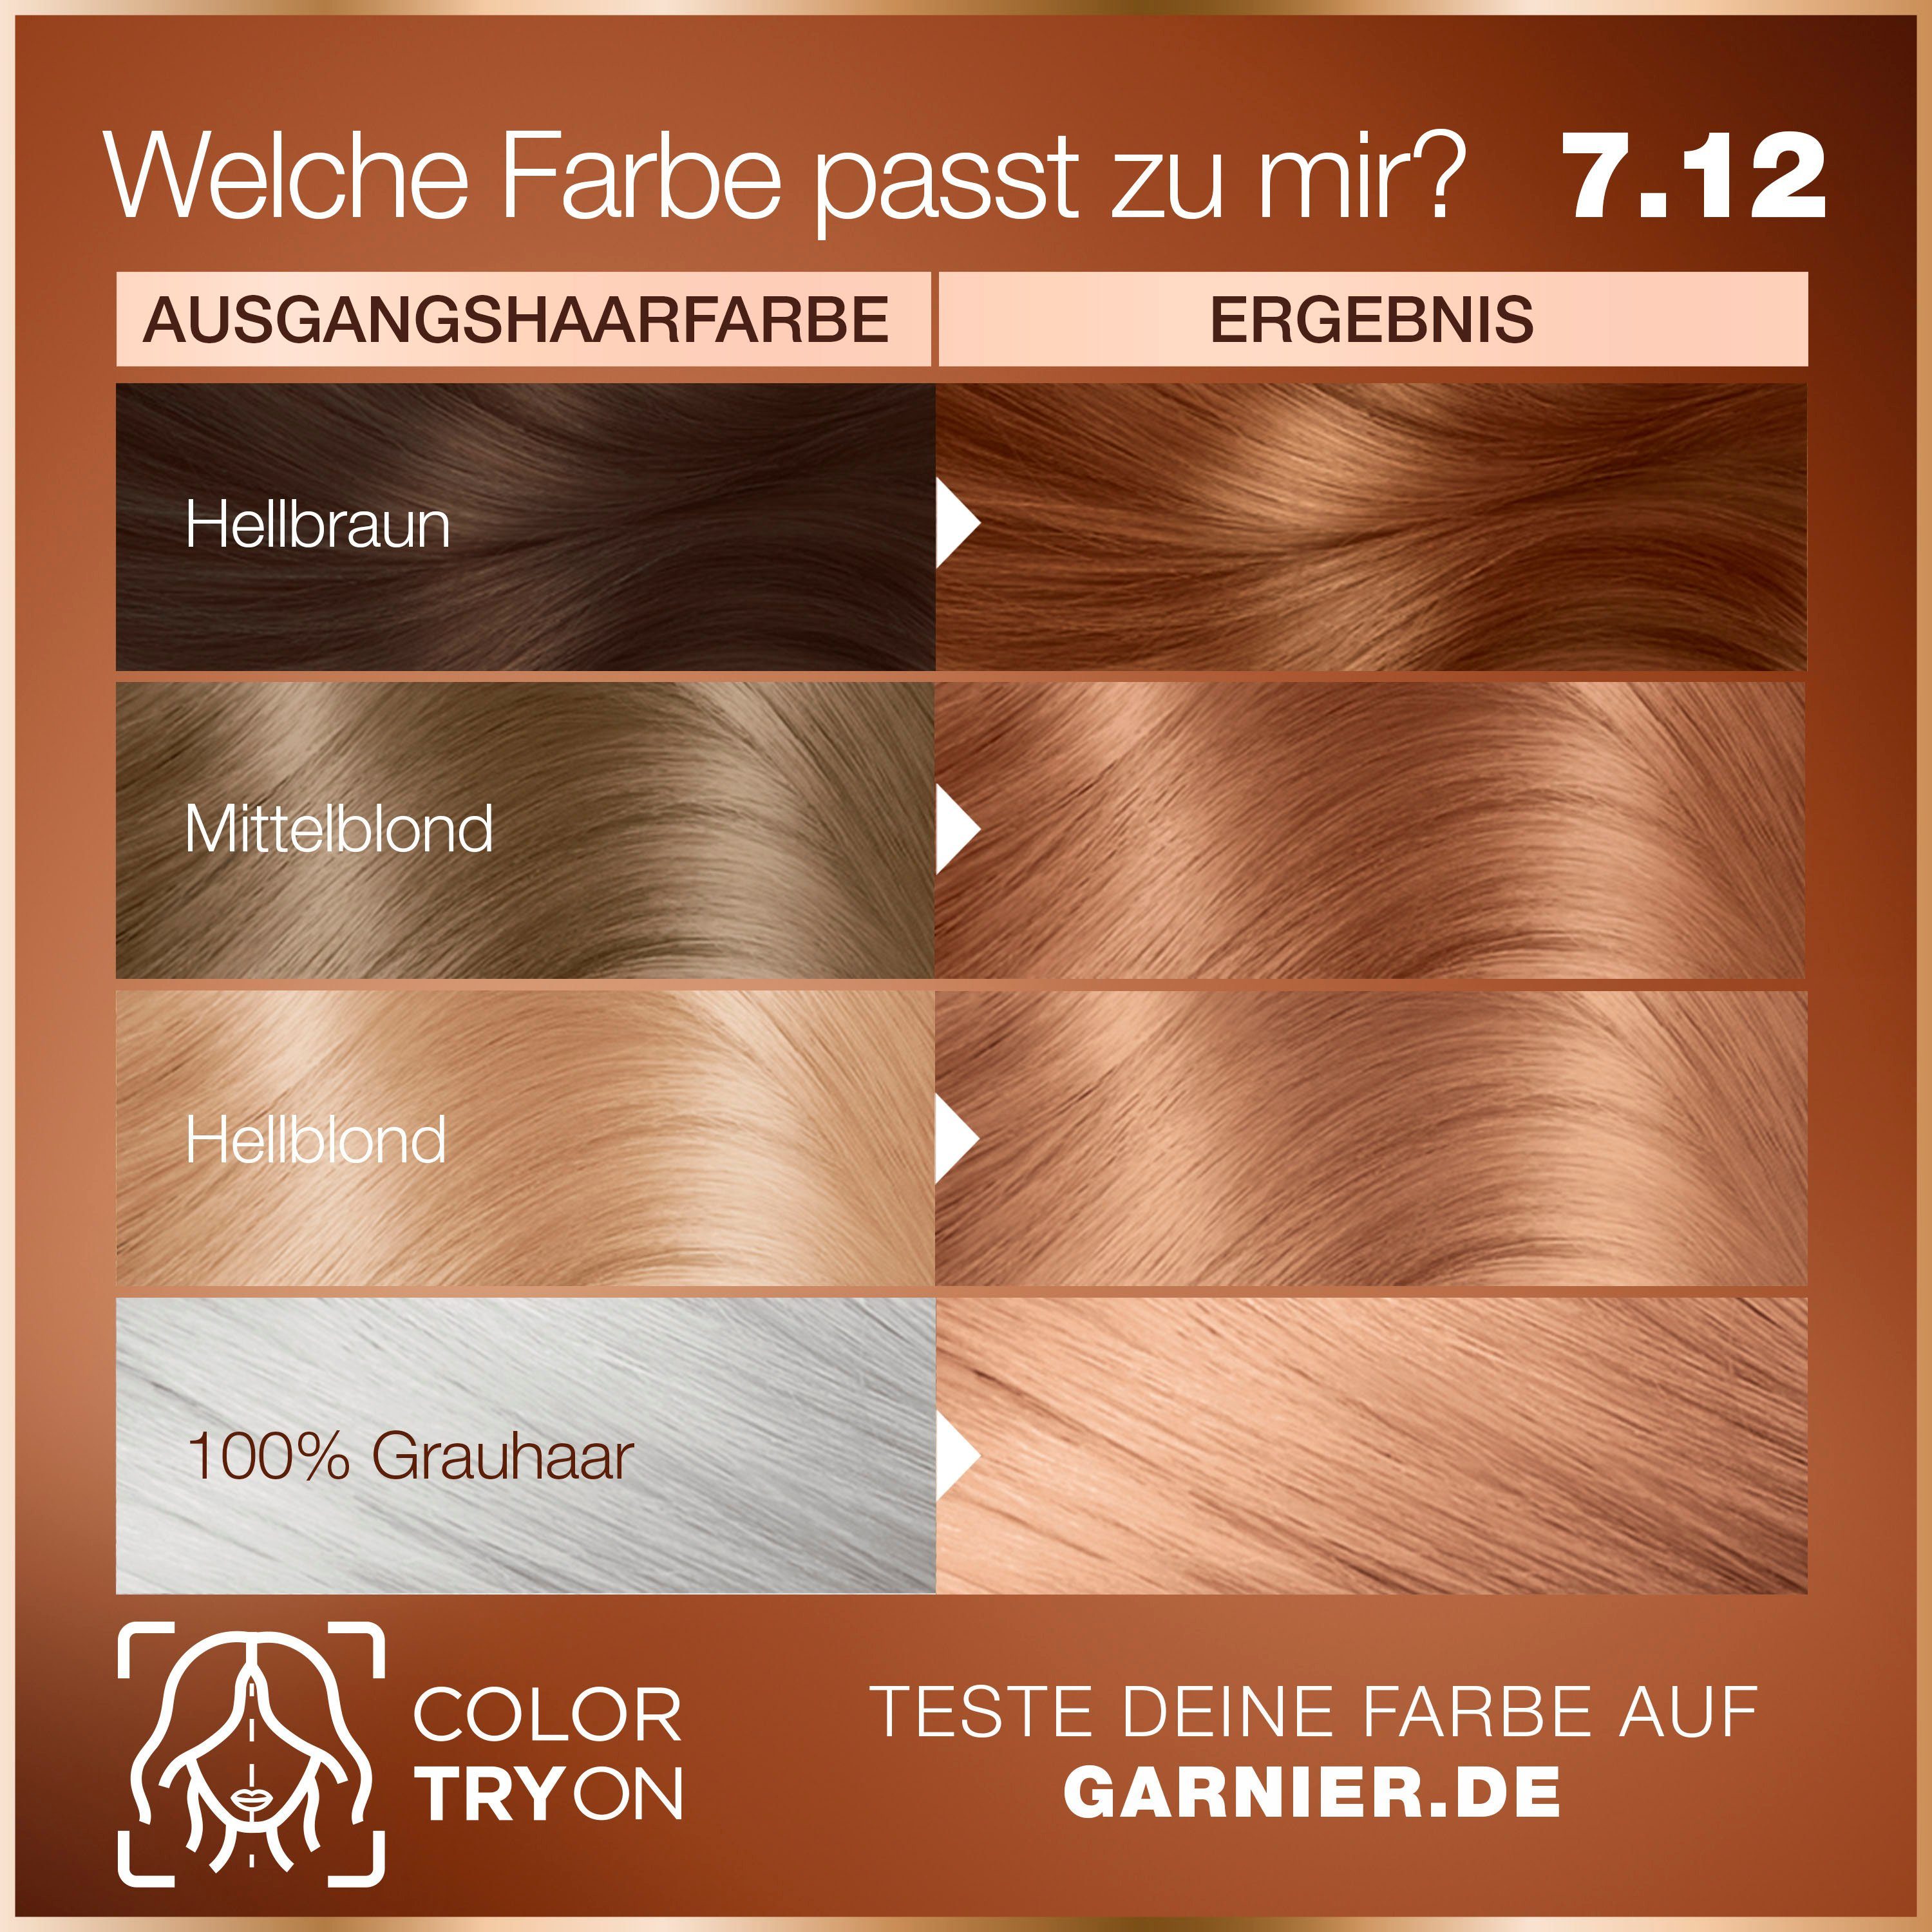 Coloration Dauerhafte Haarfarbe Garnier GOOD GARNIER